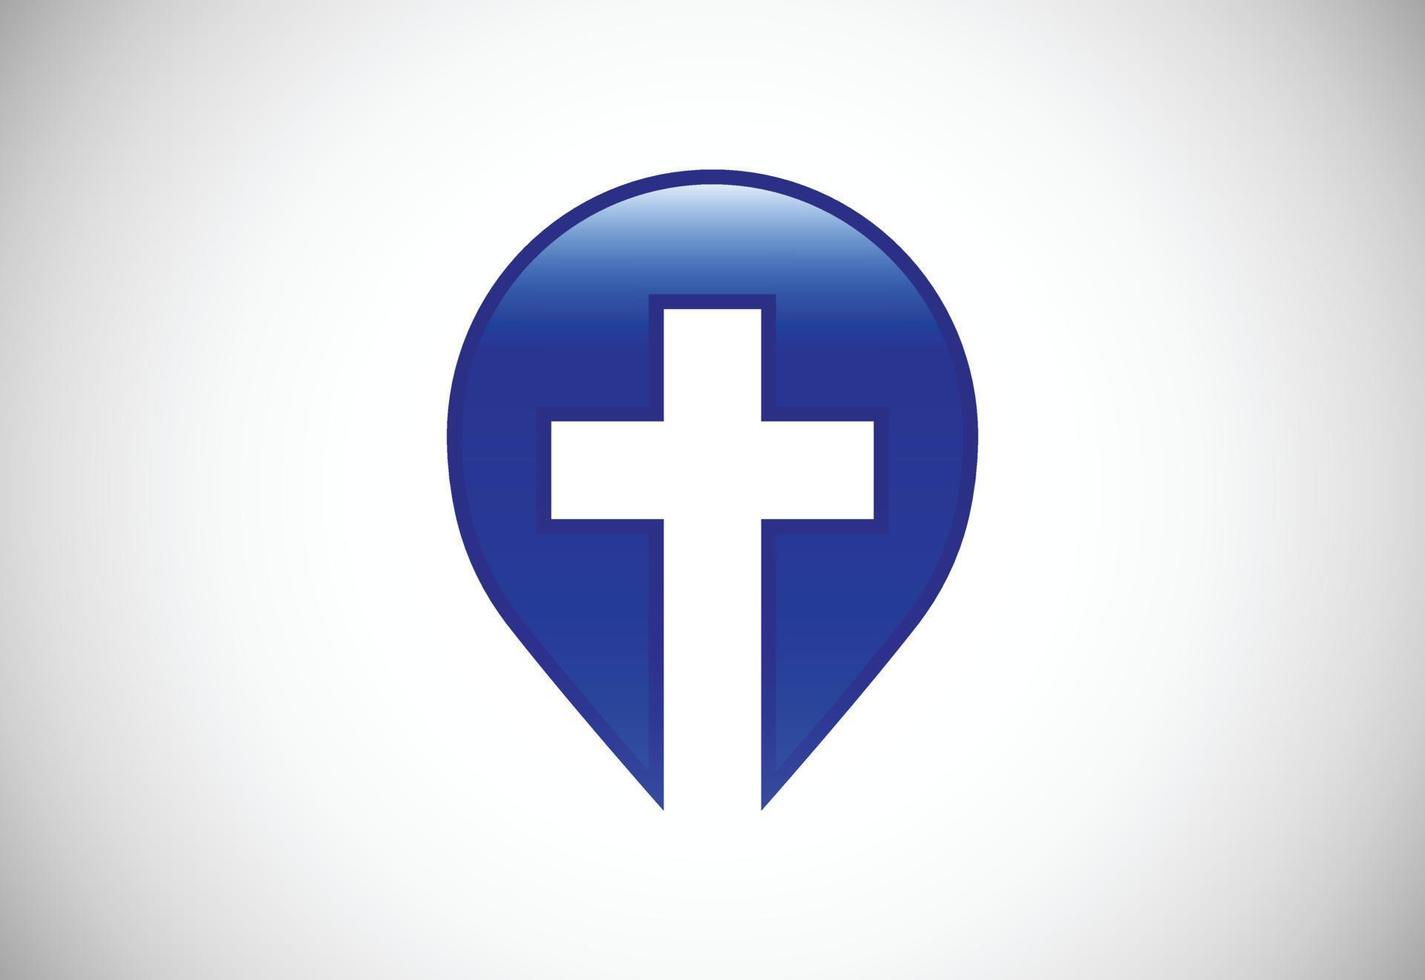 logotipo da igreja. símbolos de sinais cristãos. a cruz de jesus vetor